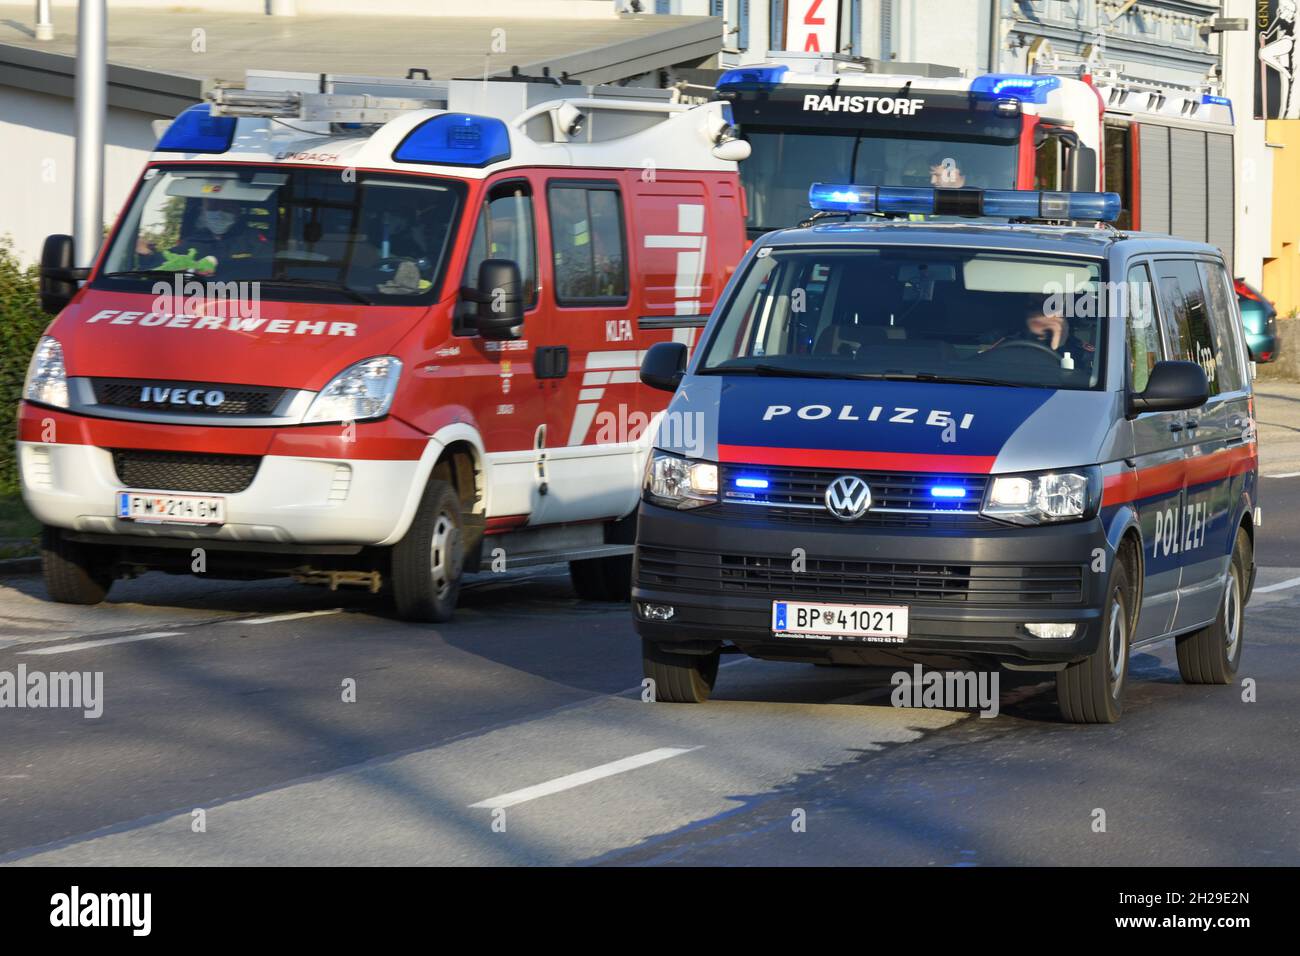 Polizei-Fahrzeug und Feuerwehr-Fahrzeug in Oberösterreich (Österreich) - Police car and fire engine in Upper Austria (Austria) - Stock Photo